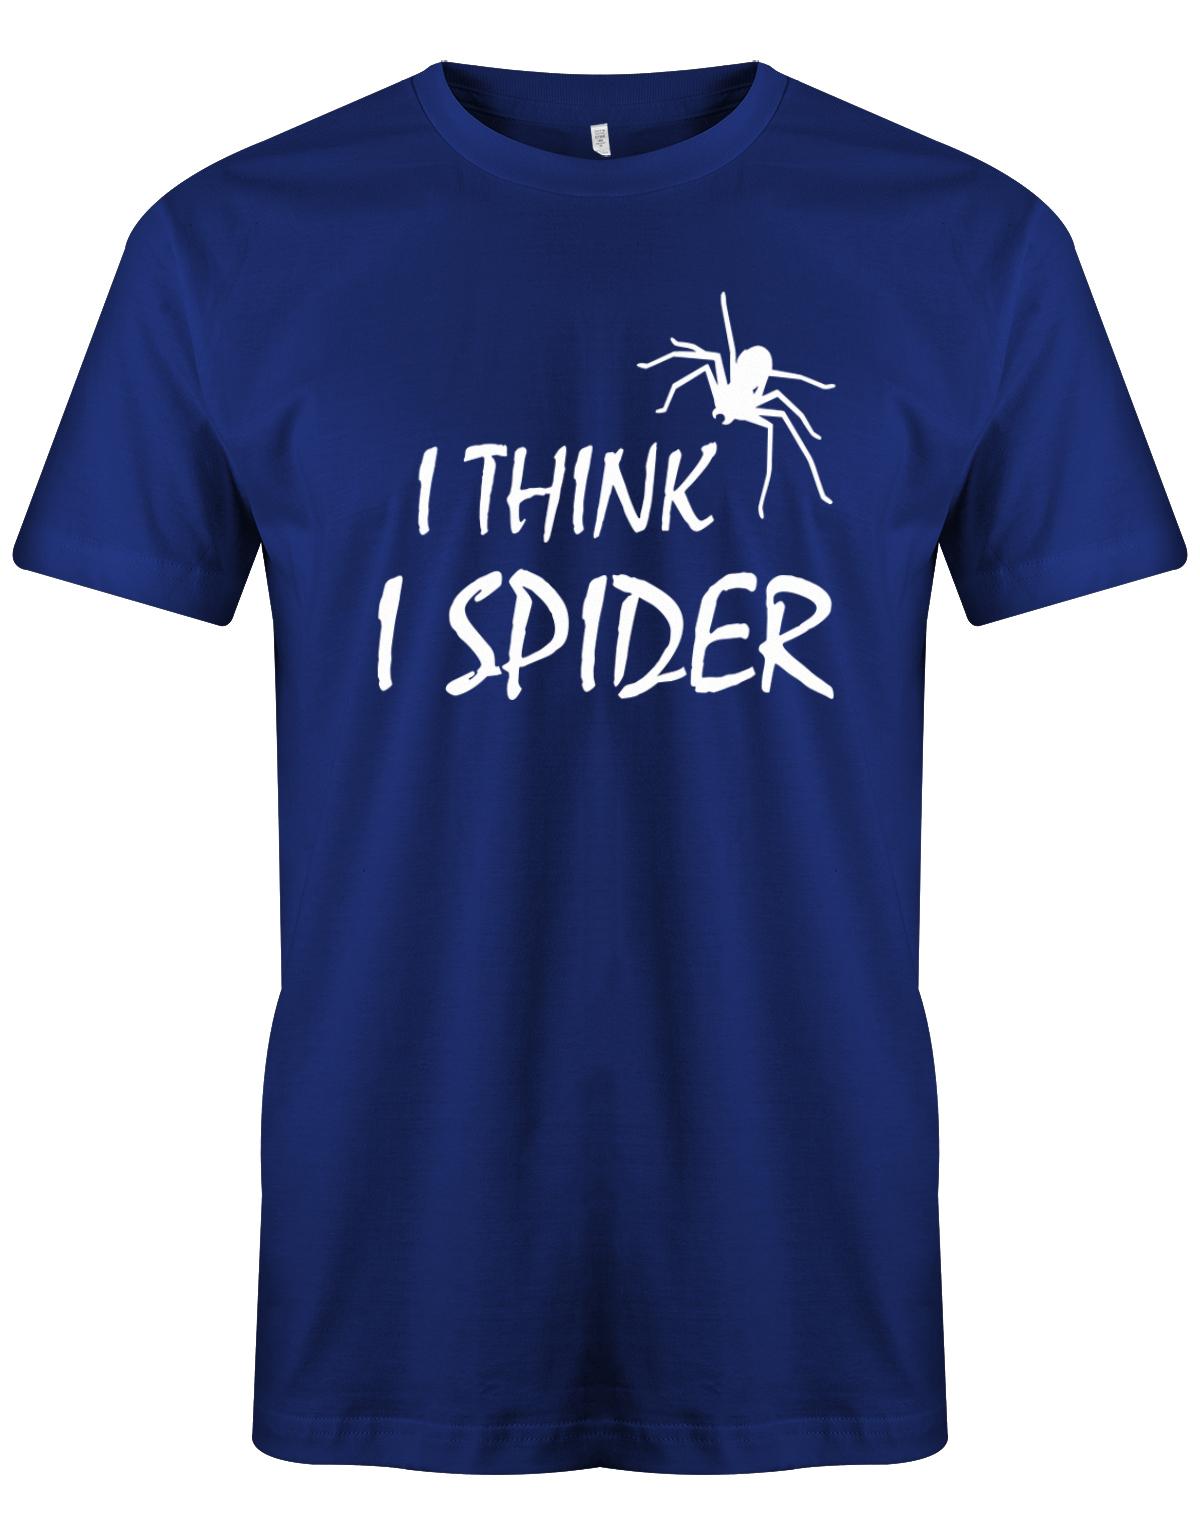 I-think-i-spider-herren-Shirt-royalblau